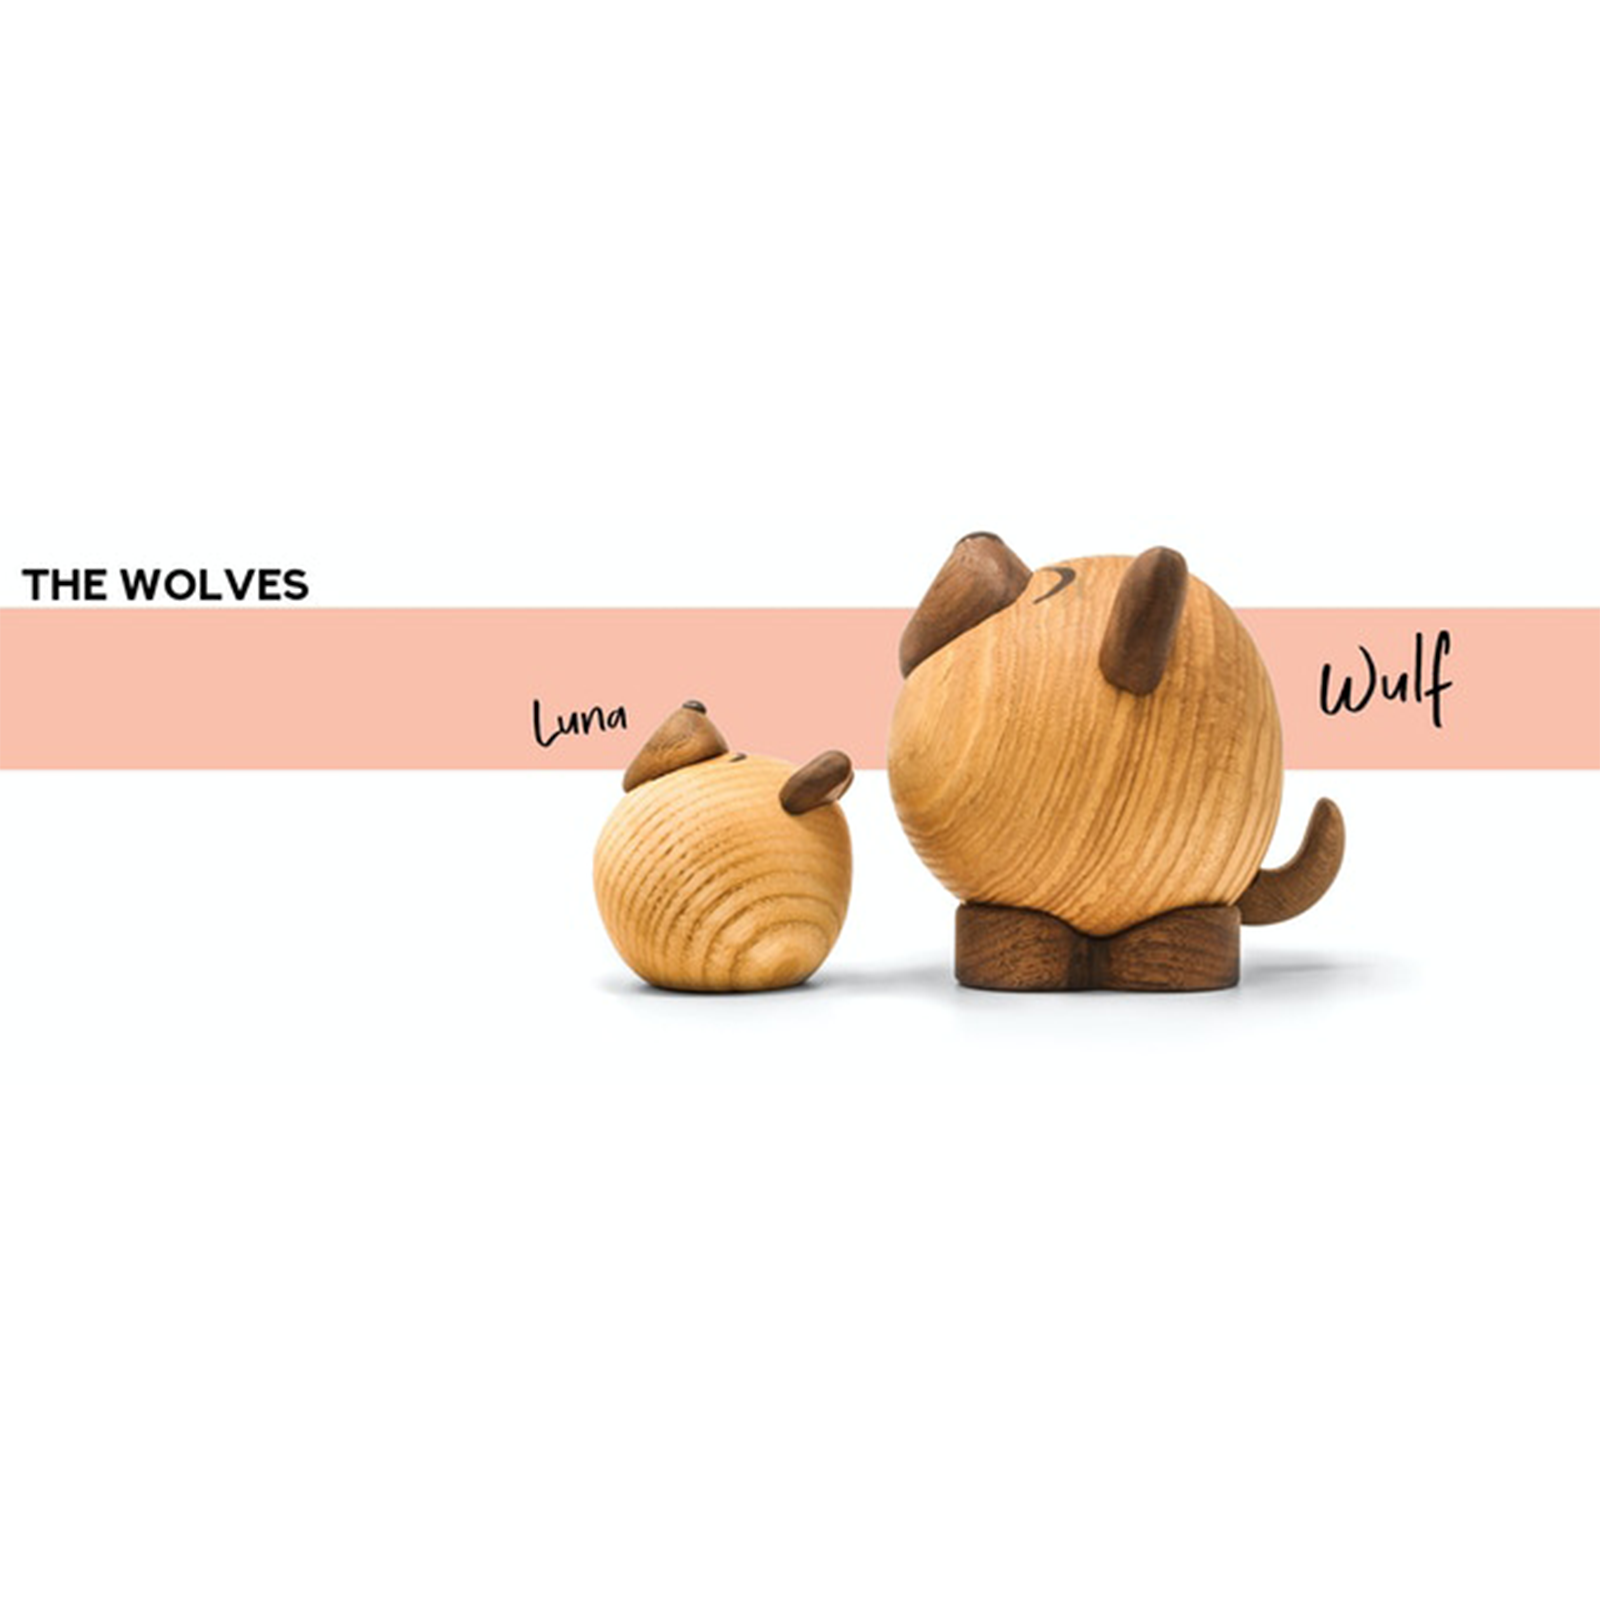 Pick-Me-Up’s – The Wolves (Luna og Wulf)